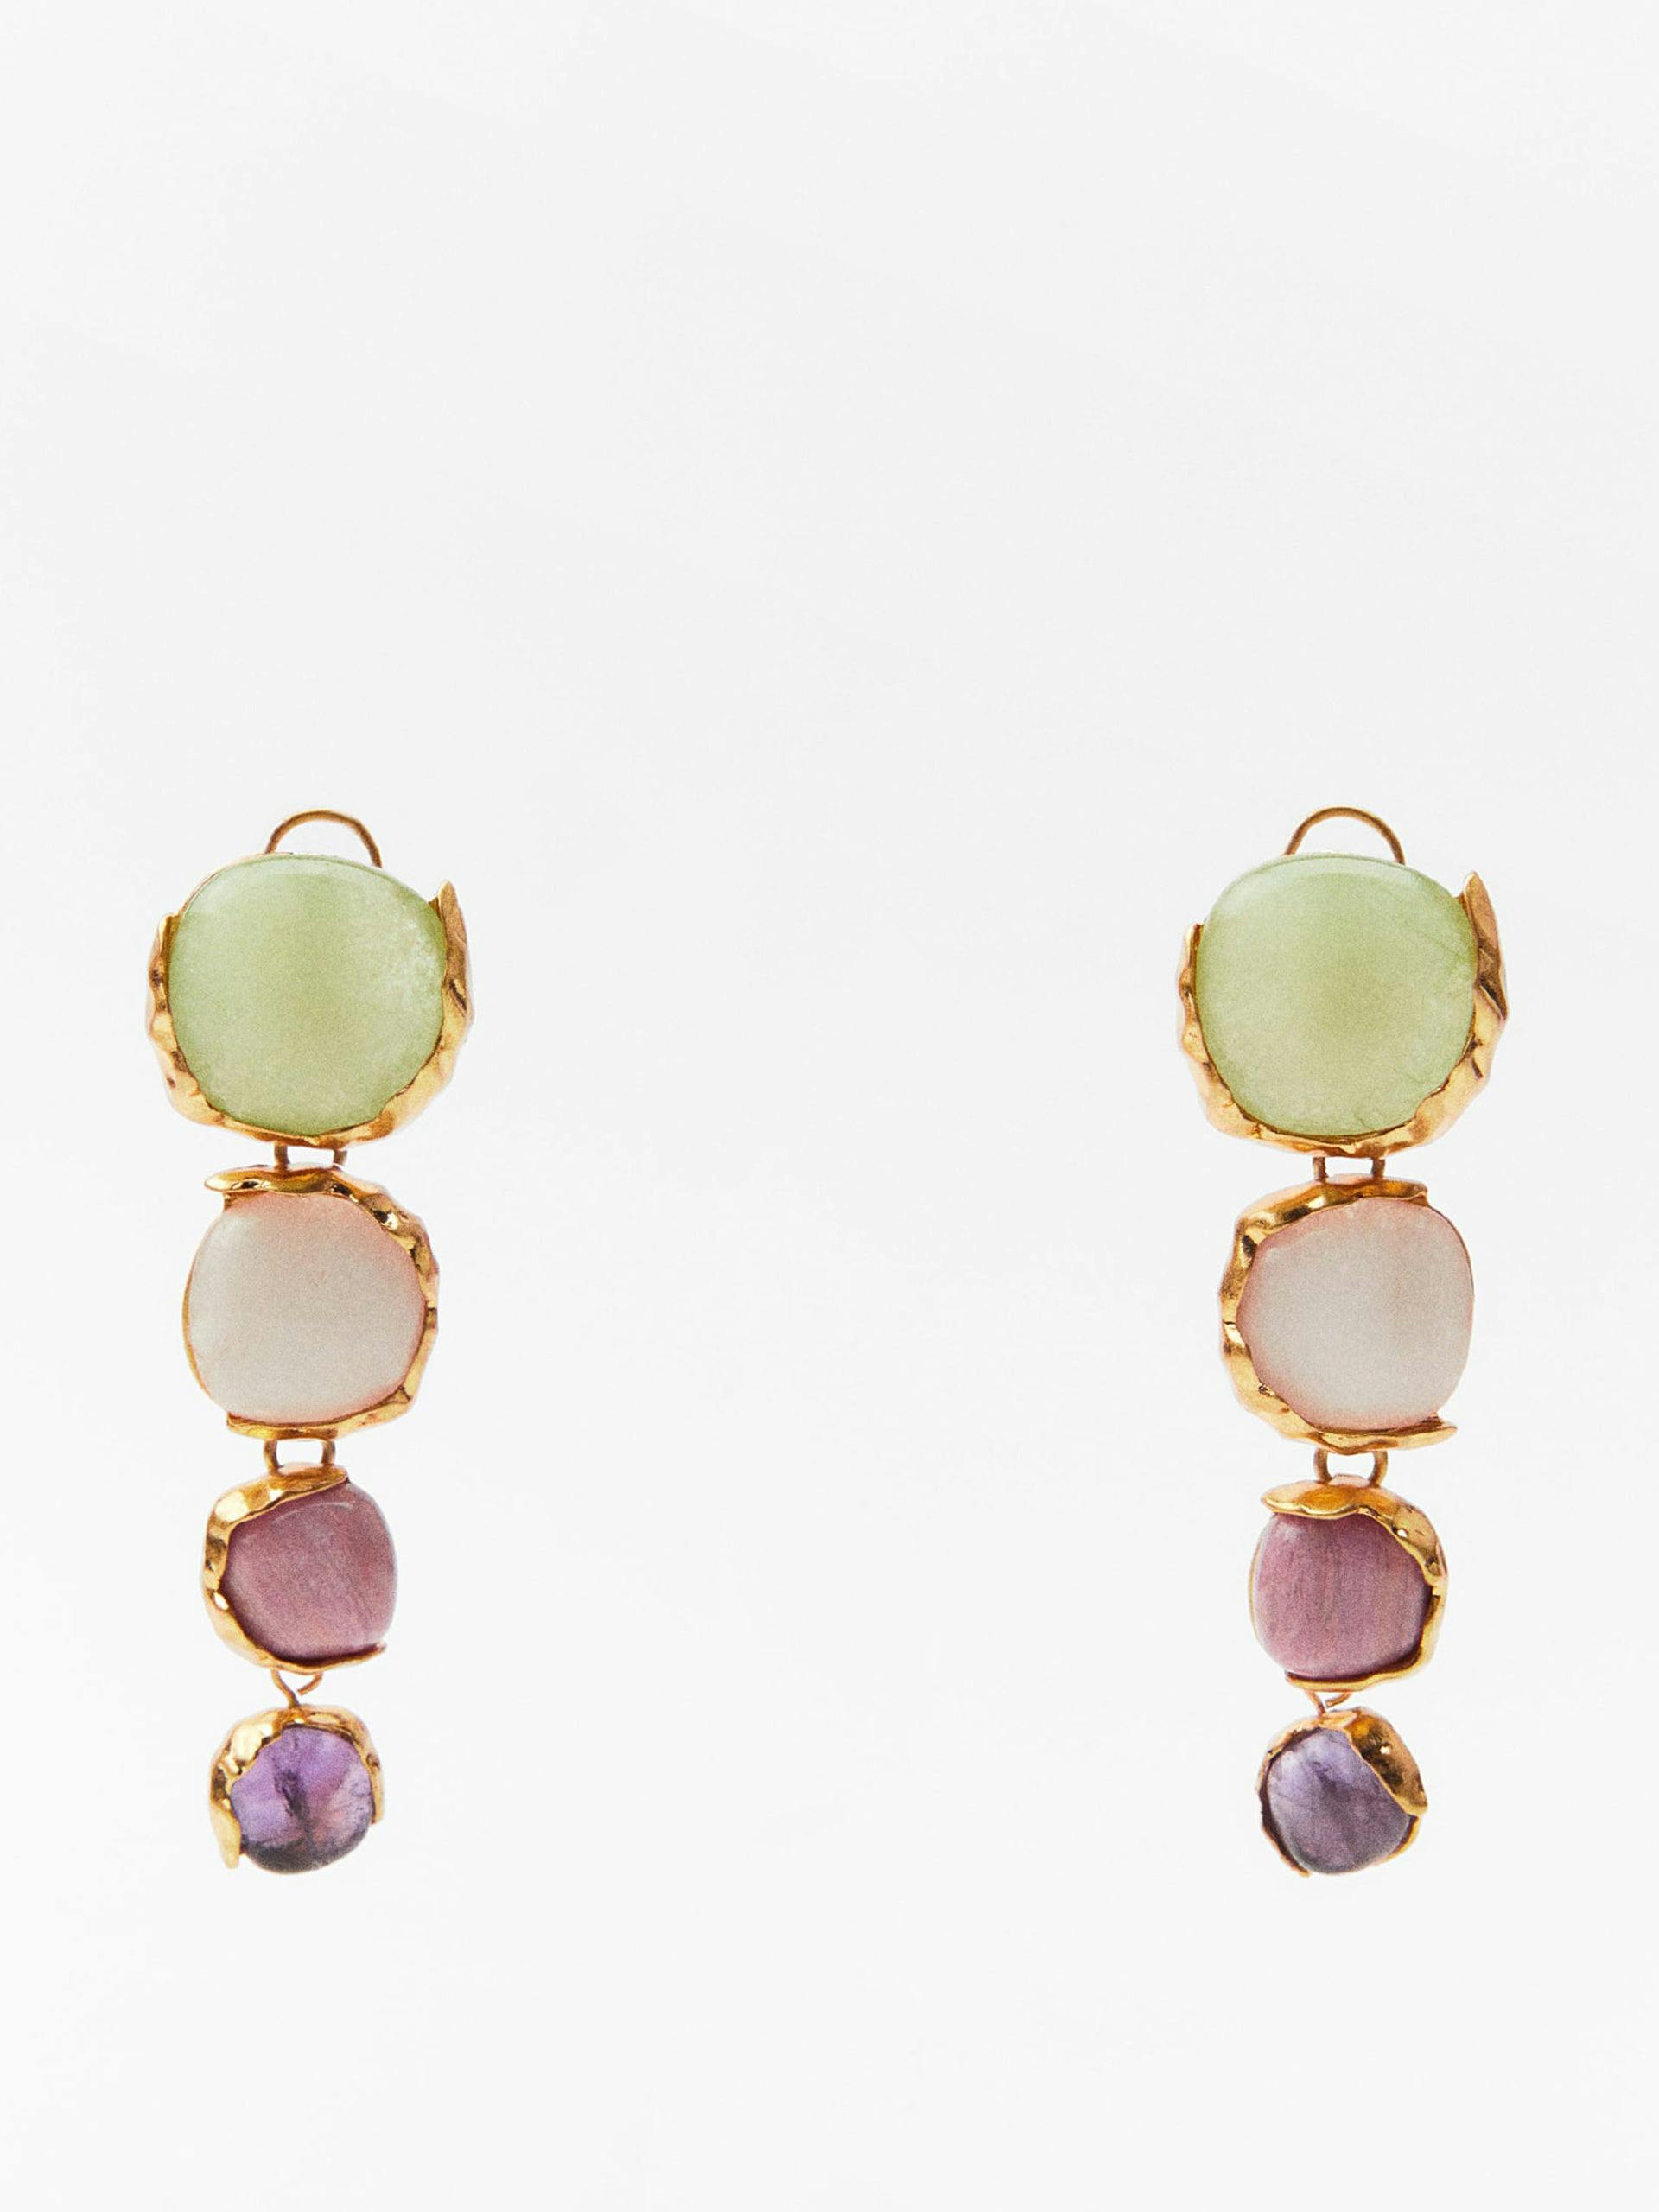 Coloured rhinestone earrings